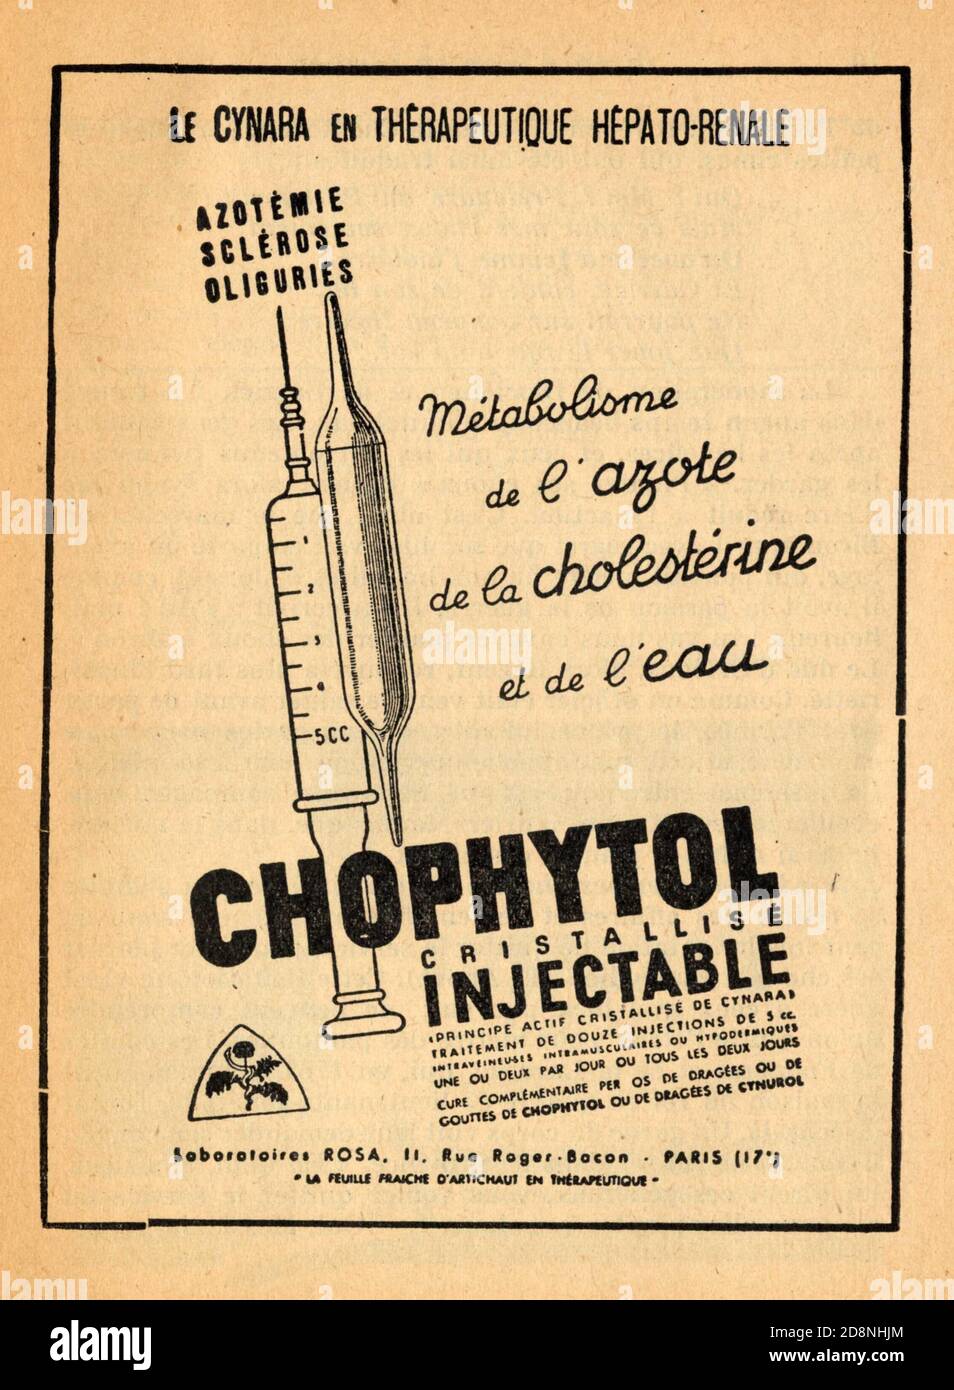 Publicité ancienne CHOPHYTOL, cristallisé iniettabile Foto Stock